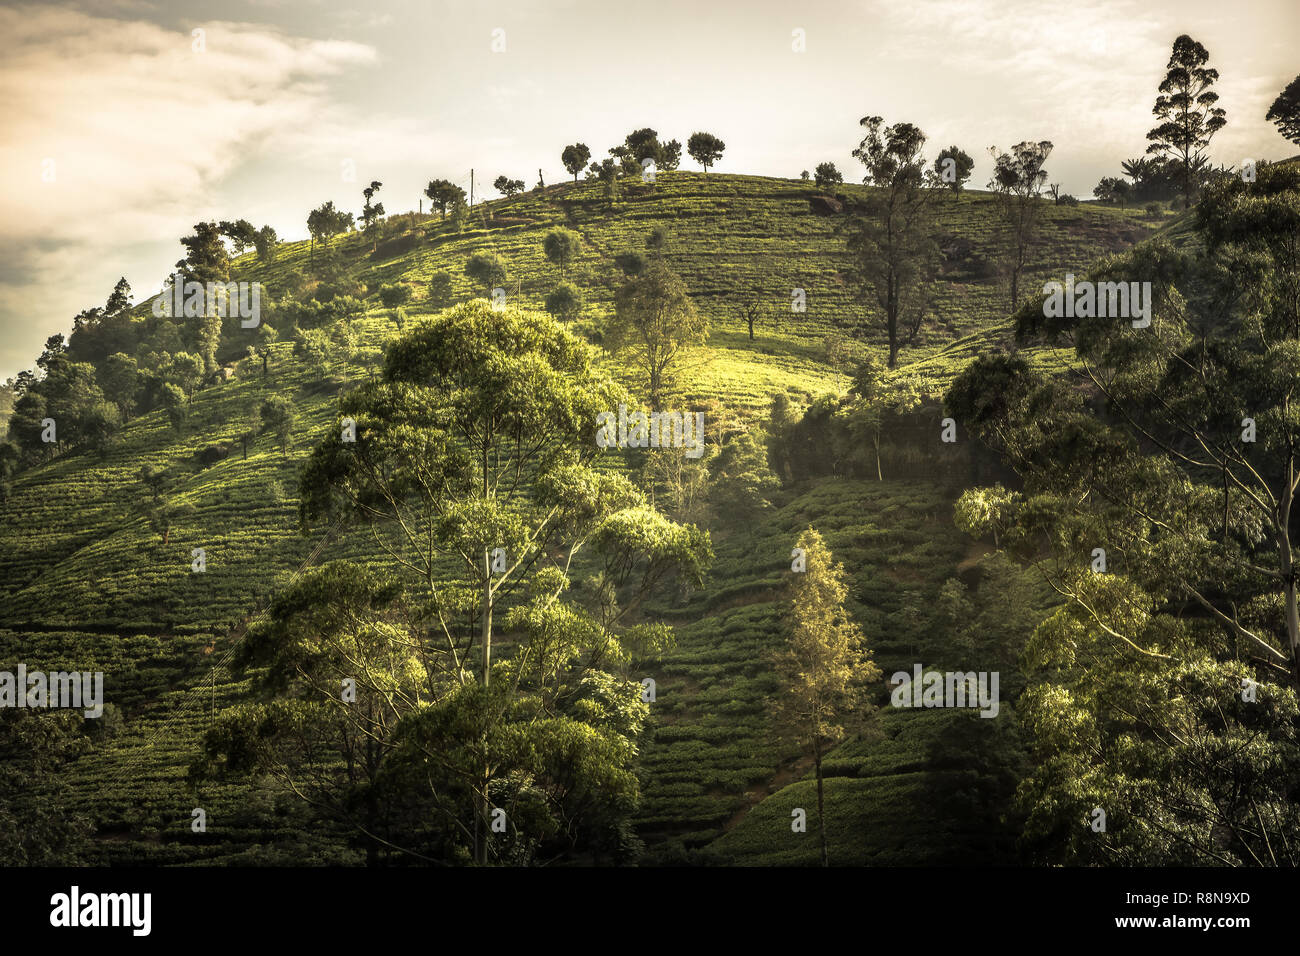 Les plantations de thé terrasse arbres champs colline paysage animé coucher du soleil dans les pays d'Asie Sri Lanka Nuwara Eliya environs Banque D'Images